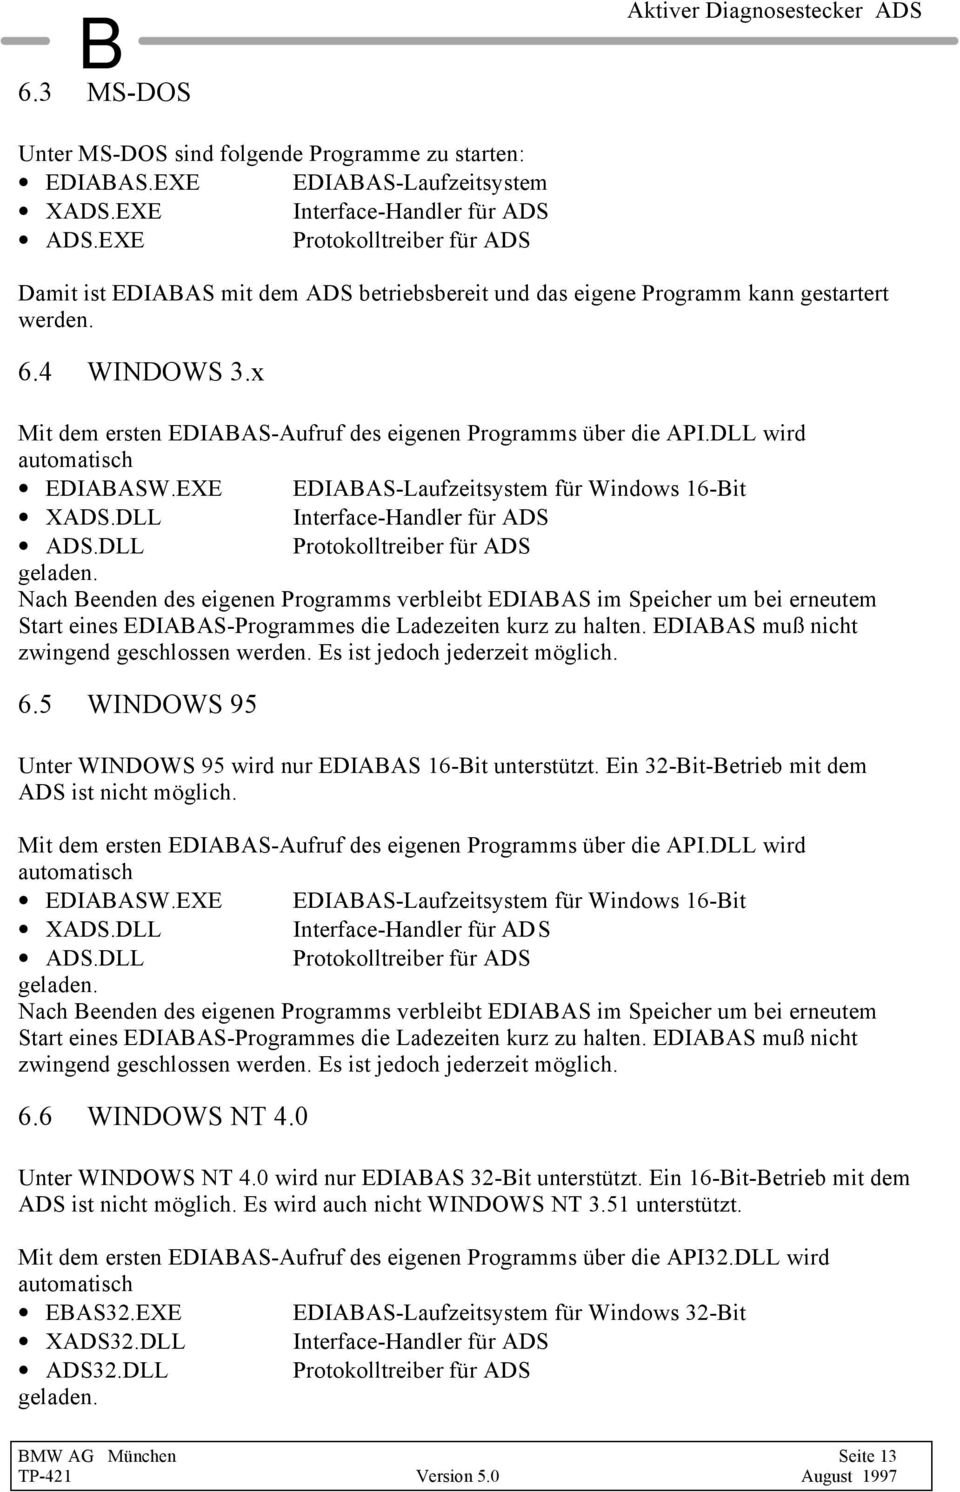 x Mit dem ersten EDIABAS-Aufruf des eigenen Programms über die API.DLL wird automatisch EDIABASW.EXE EDIABAS-Laufzeitsystem für Windows 16-Bit XADS.DLL Interface-Handler für ADS ADS.